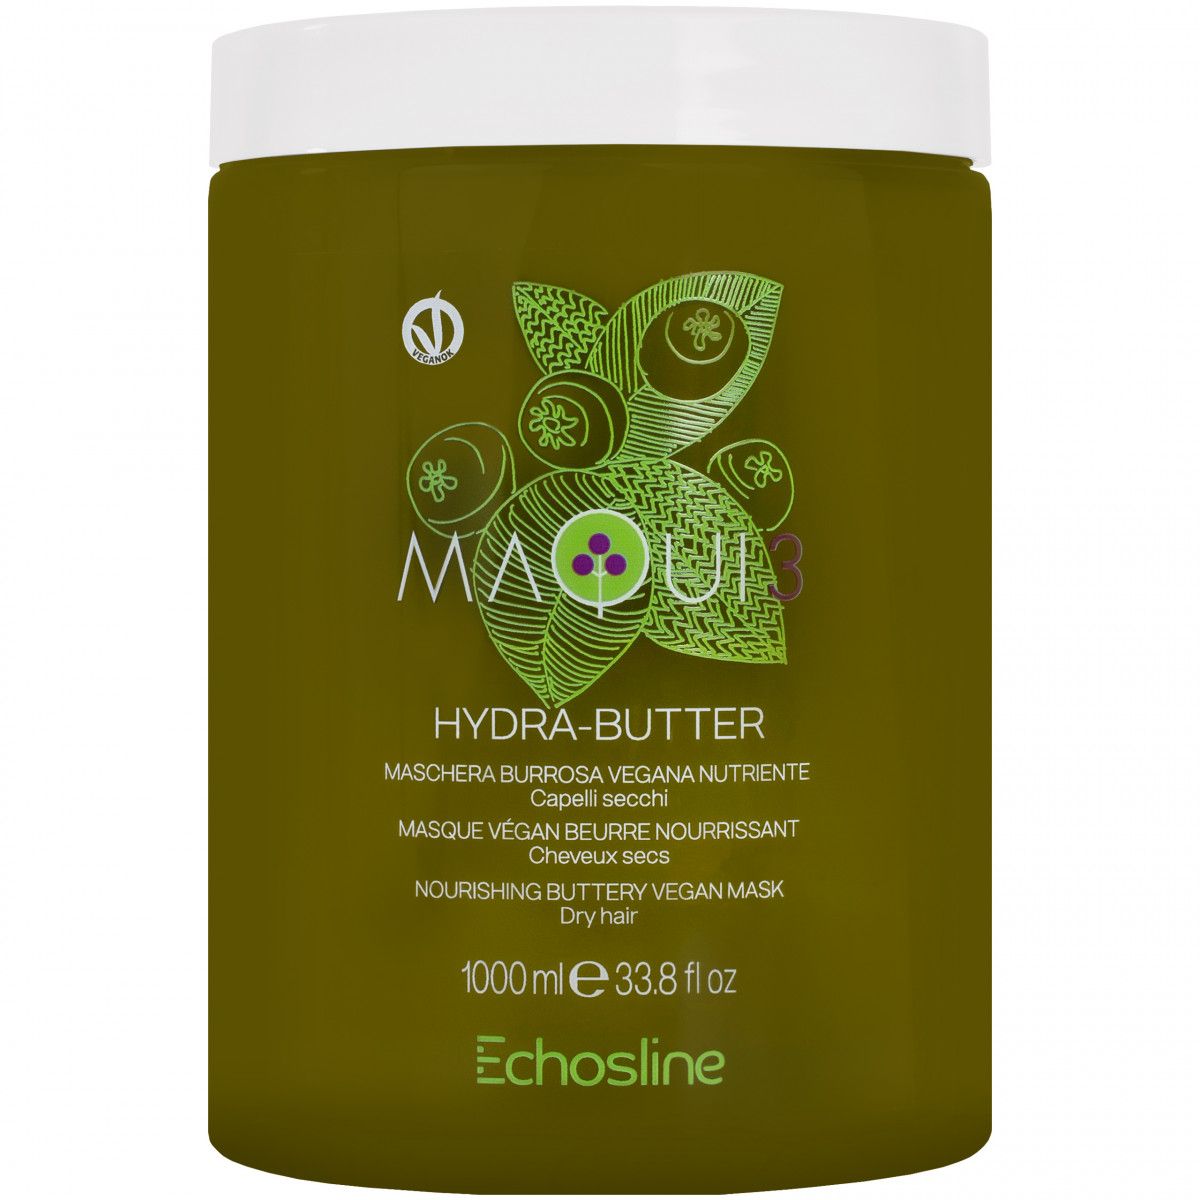 Echosline Maqui 3 Hydra-Butter - wegańska maska do włosów zniszczonych i suchych, 1000ml